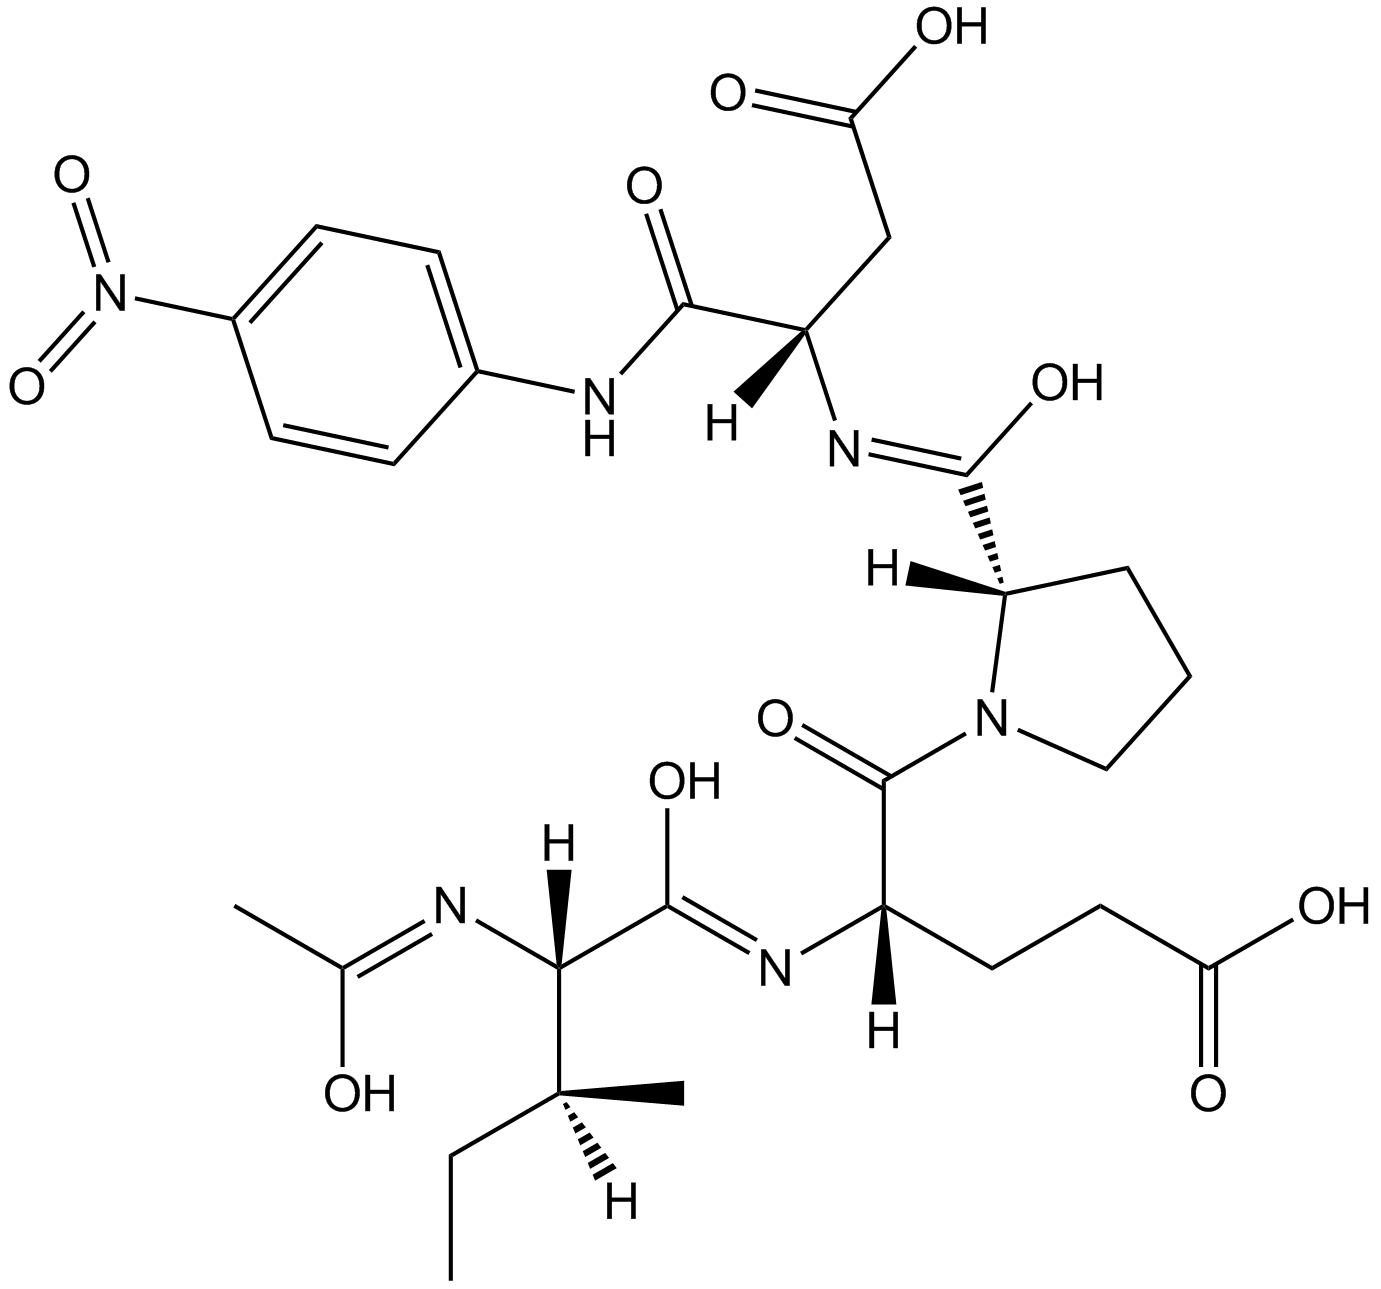 Ac-Ile-Glu-Pro-Asp-pNA Chemical Structure